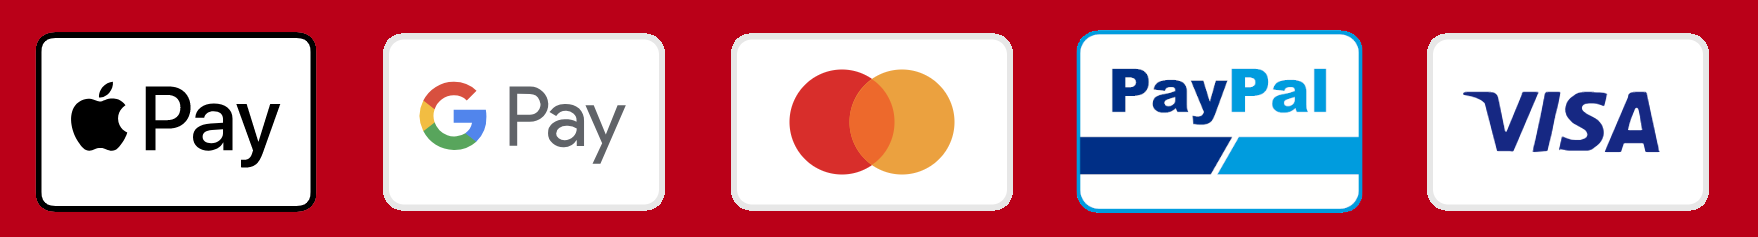 Apple Pay Google Pay MasterCard Visa